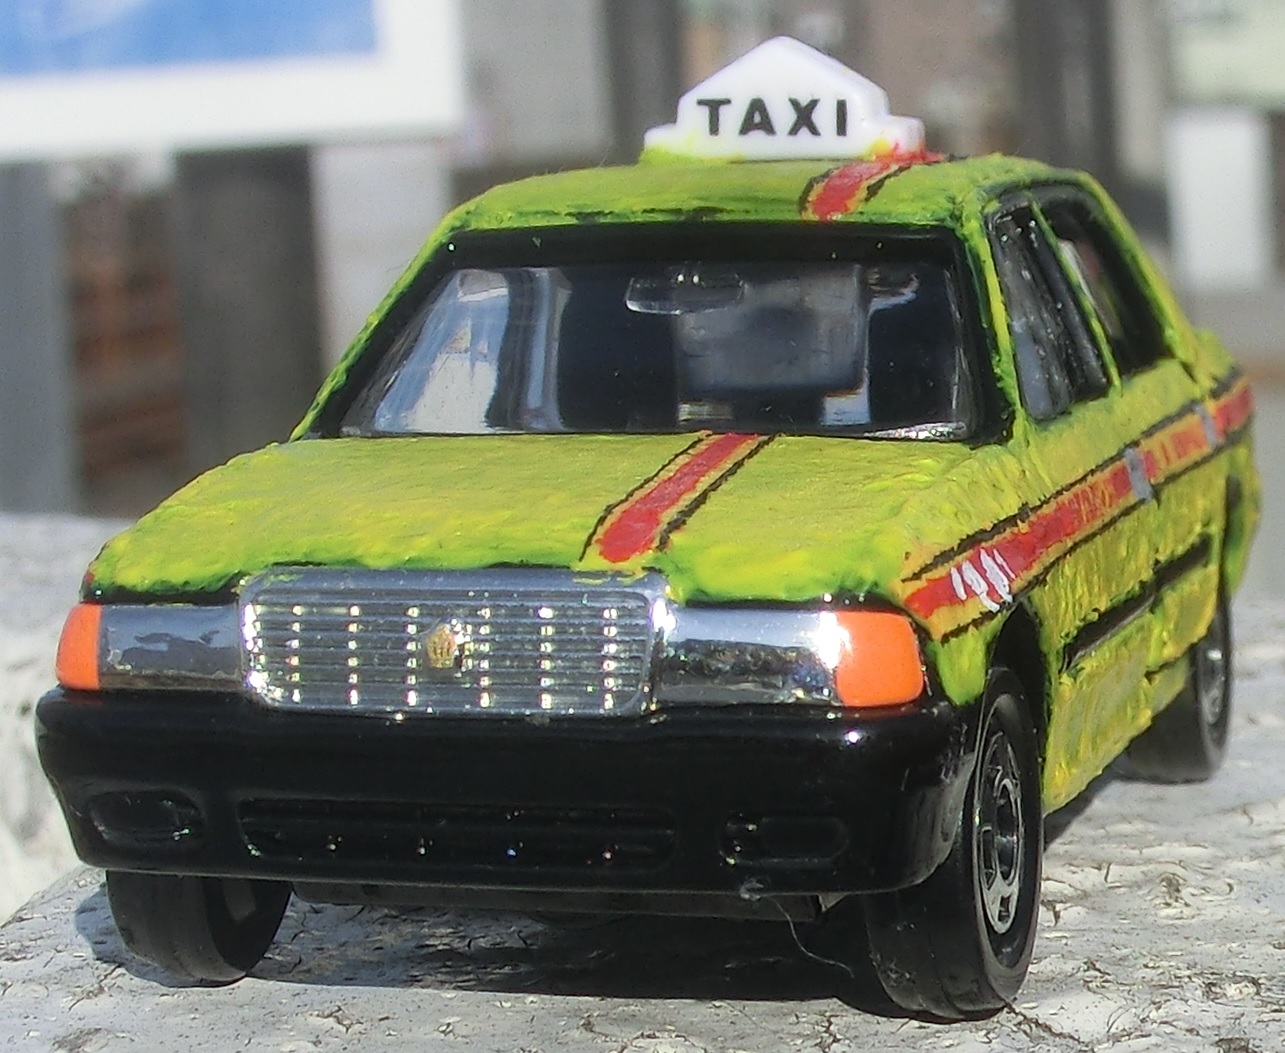 Tomica-TaxiB.jpg